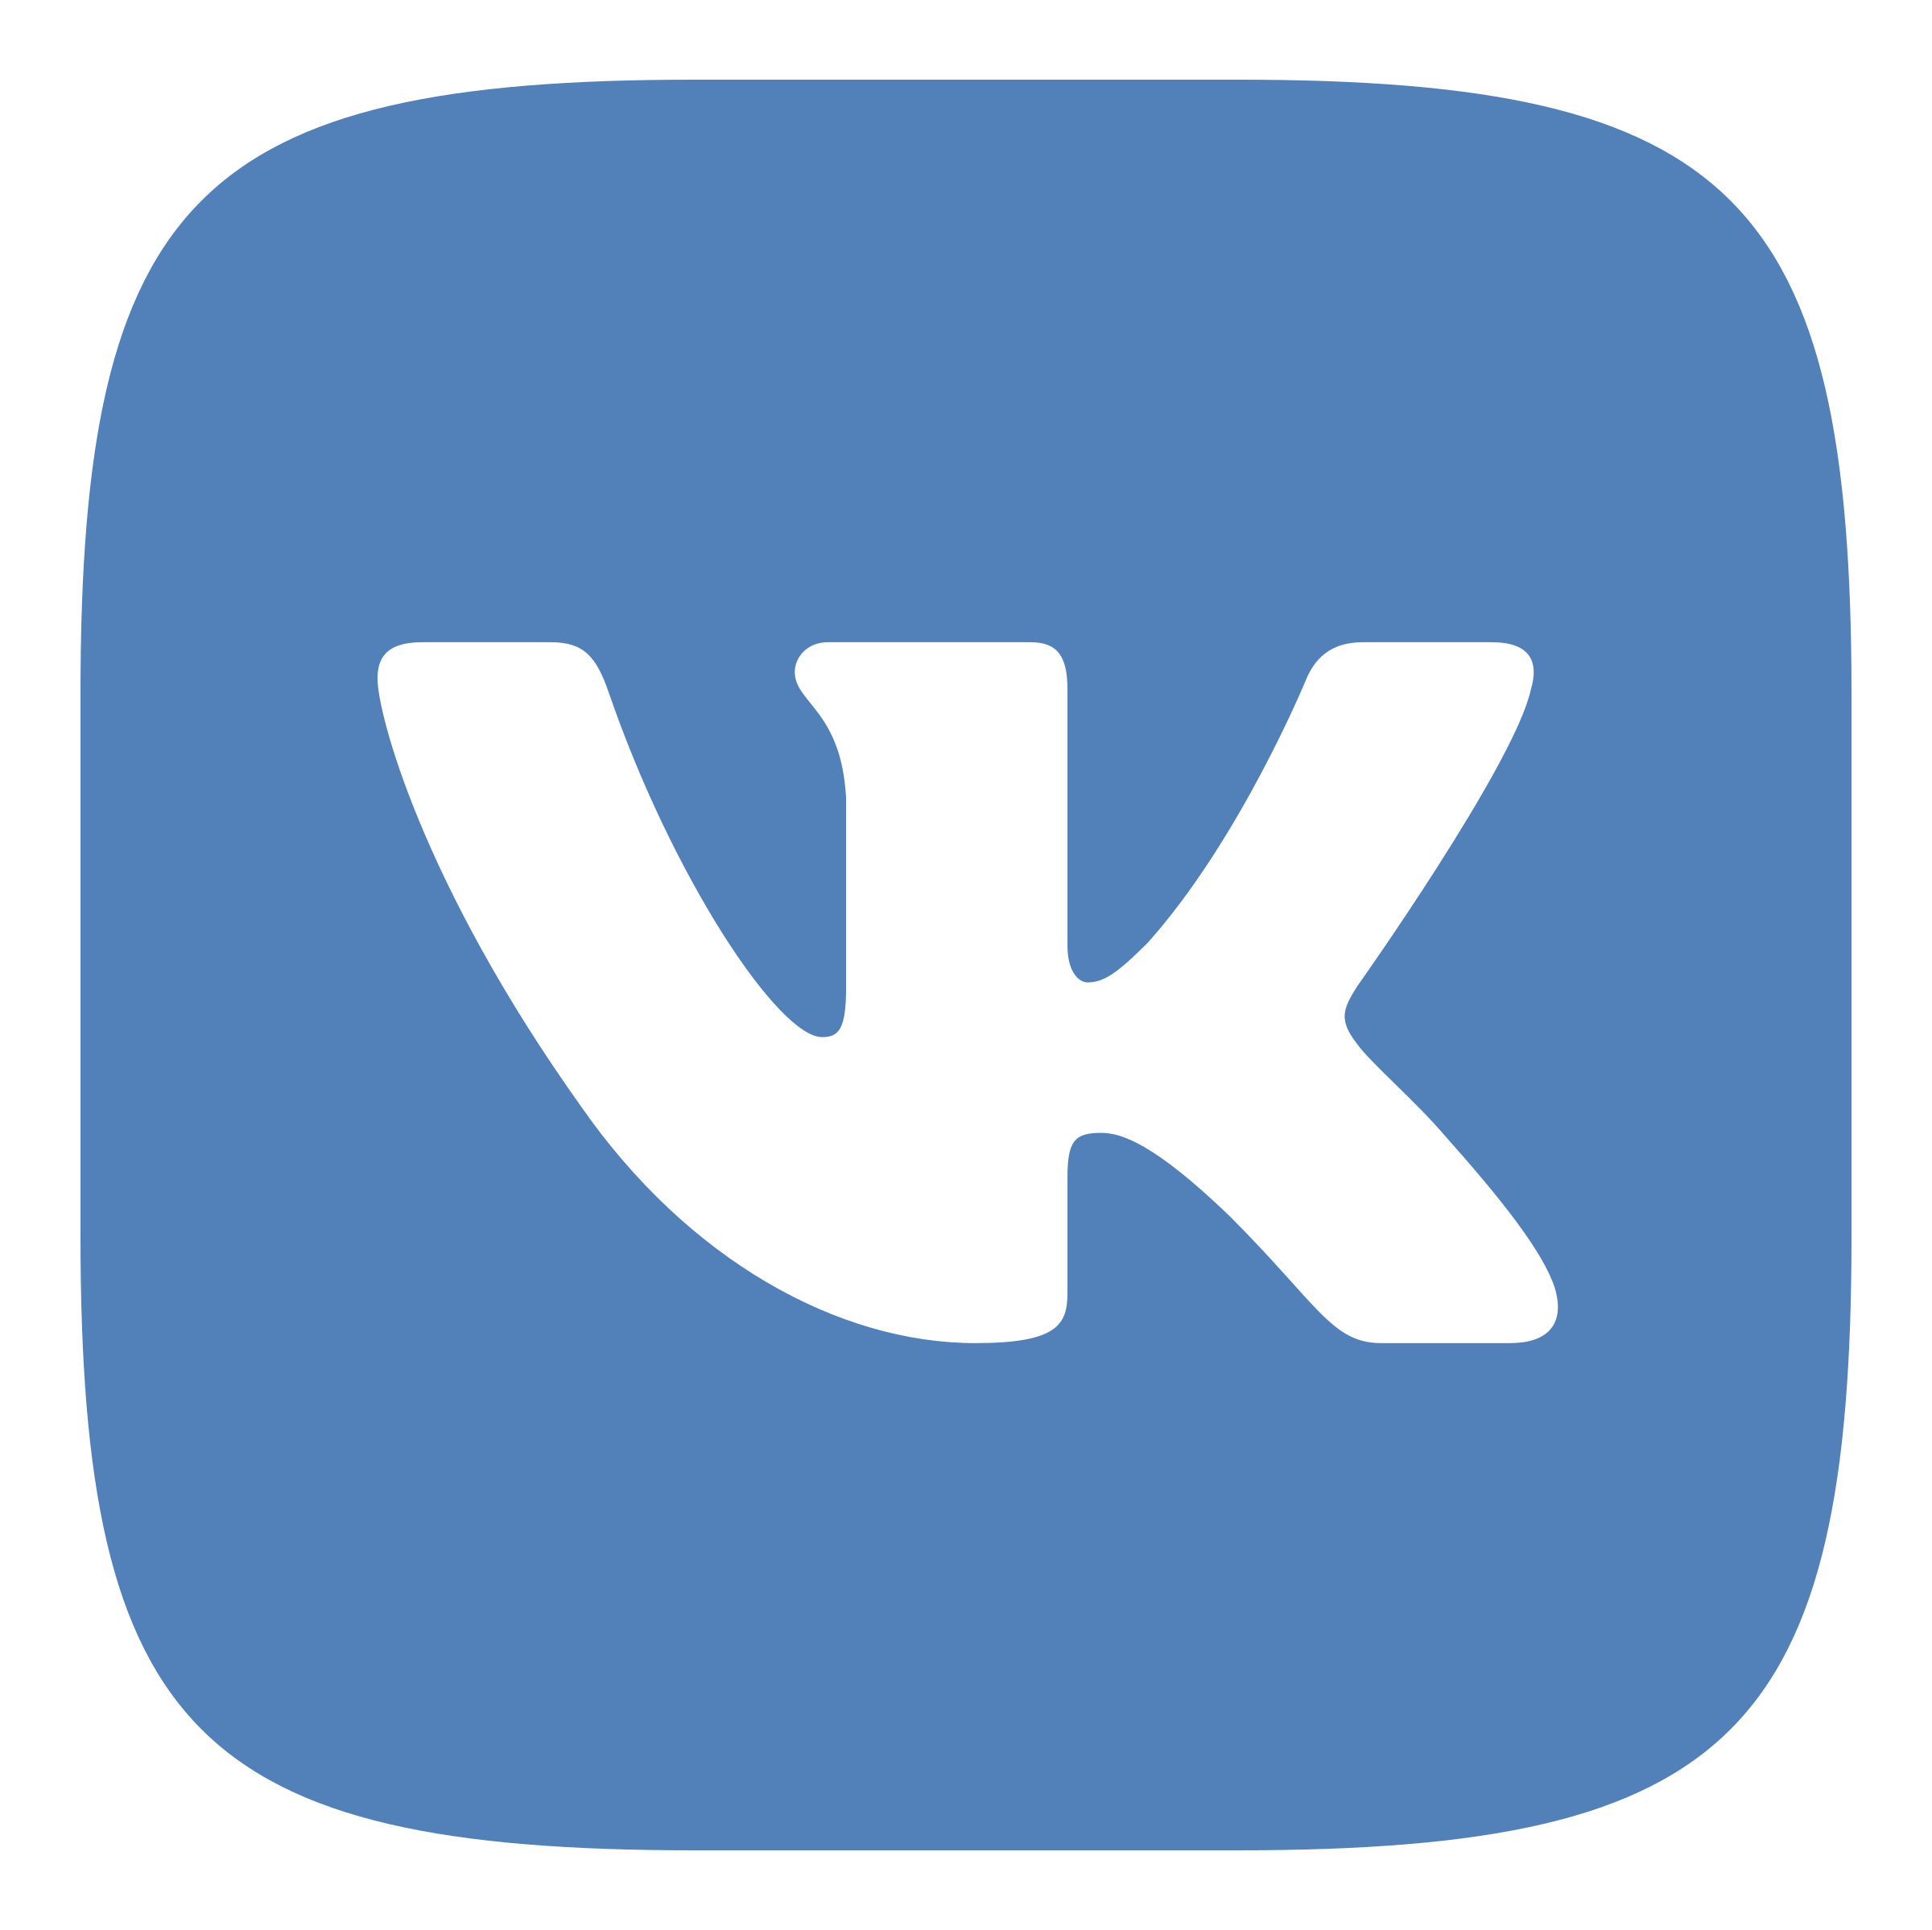 vk-logo-transparent.png